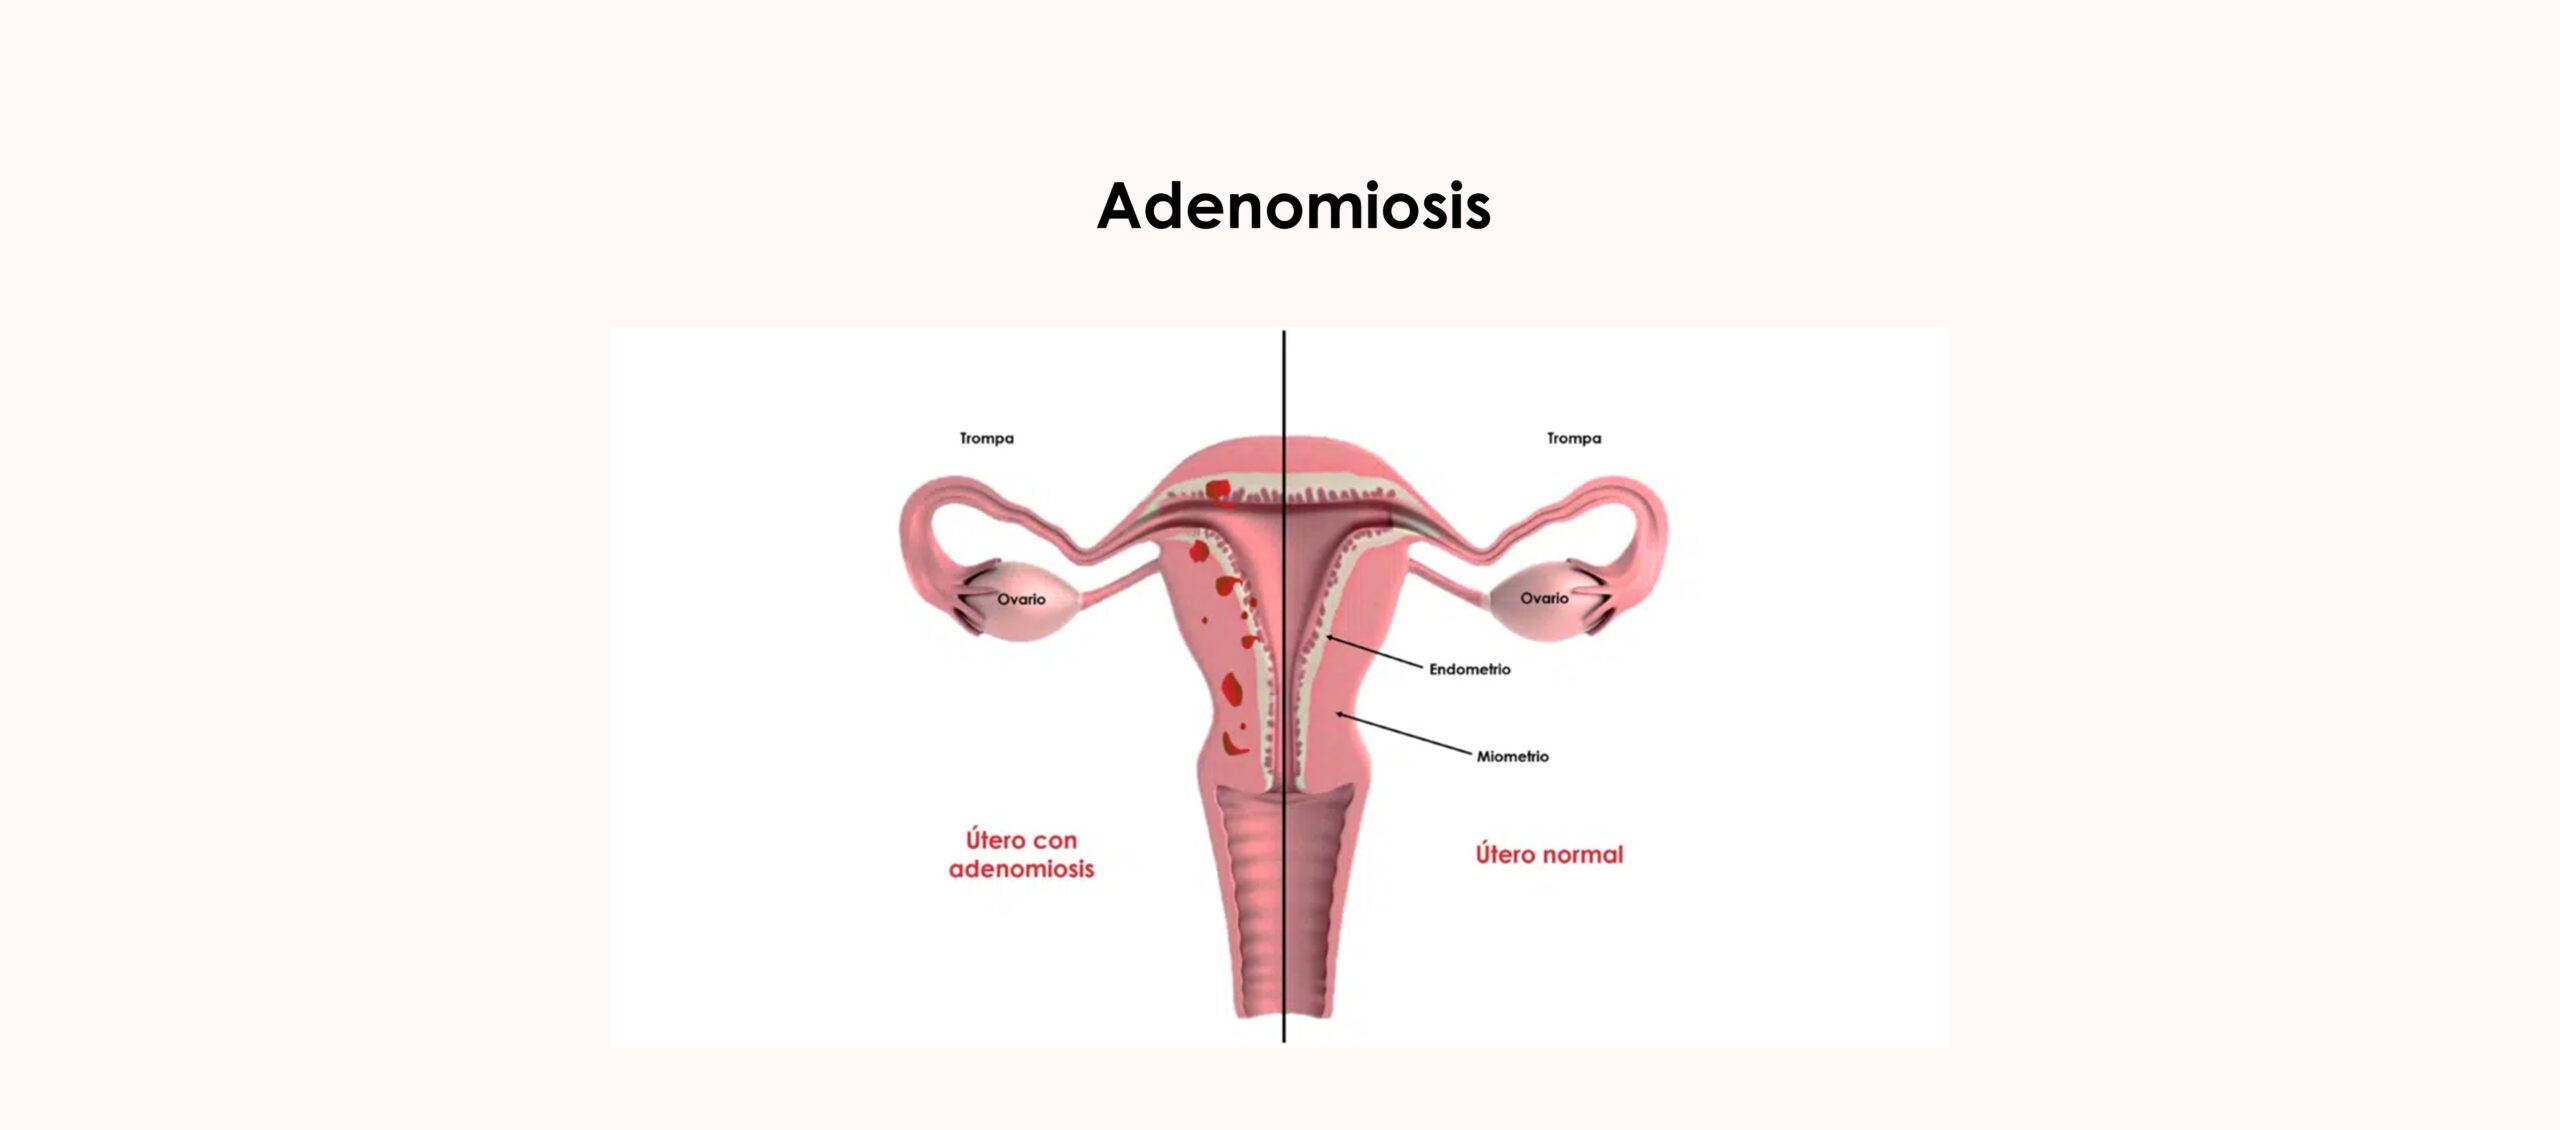 La adenomiosis, otra posible causa de infertilidad por factor uterino